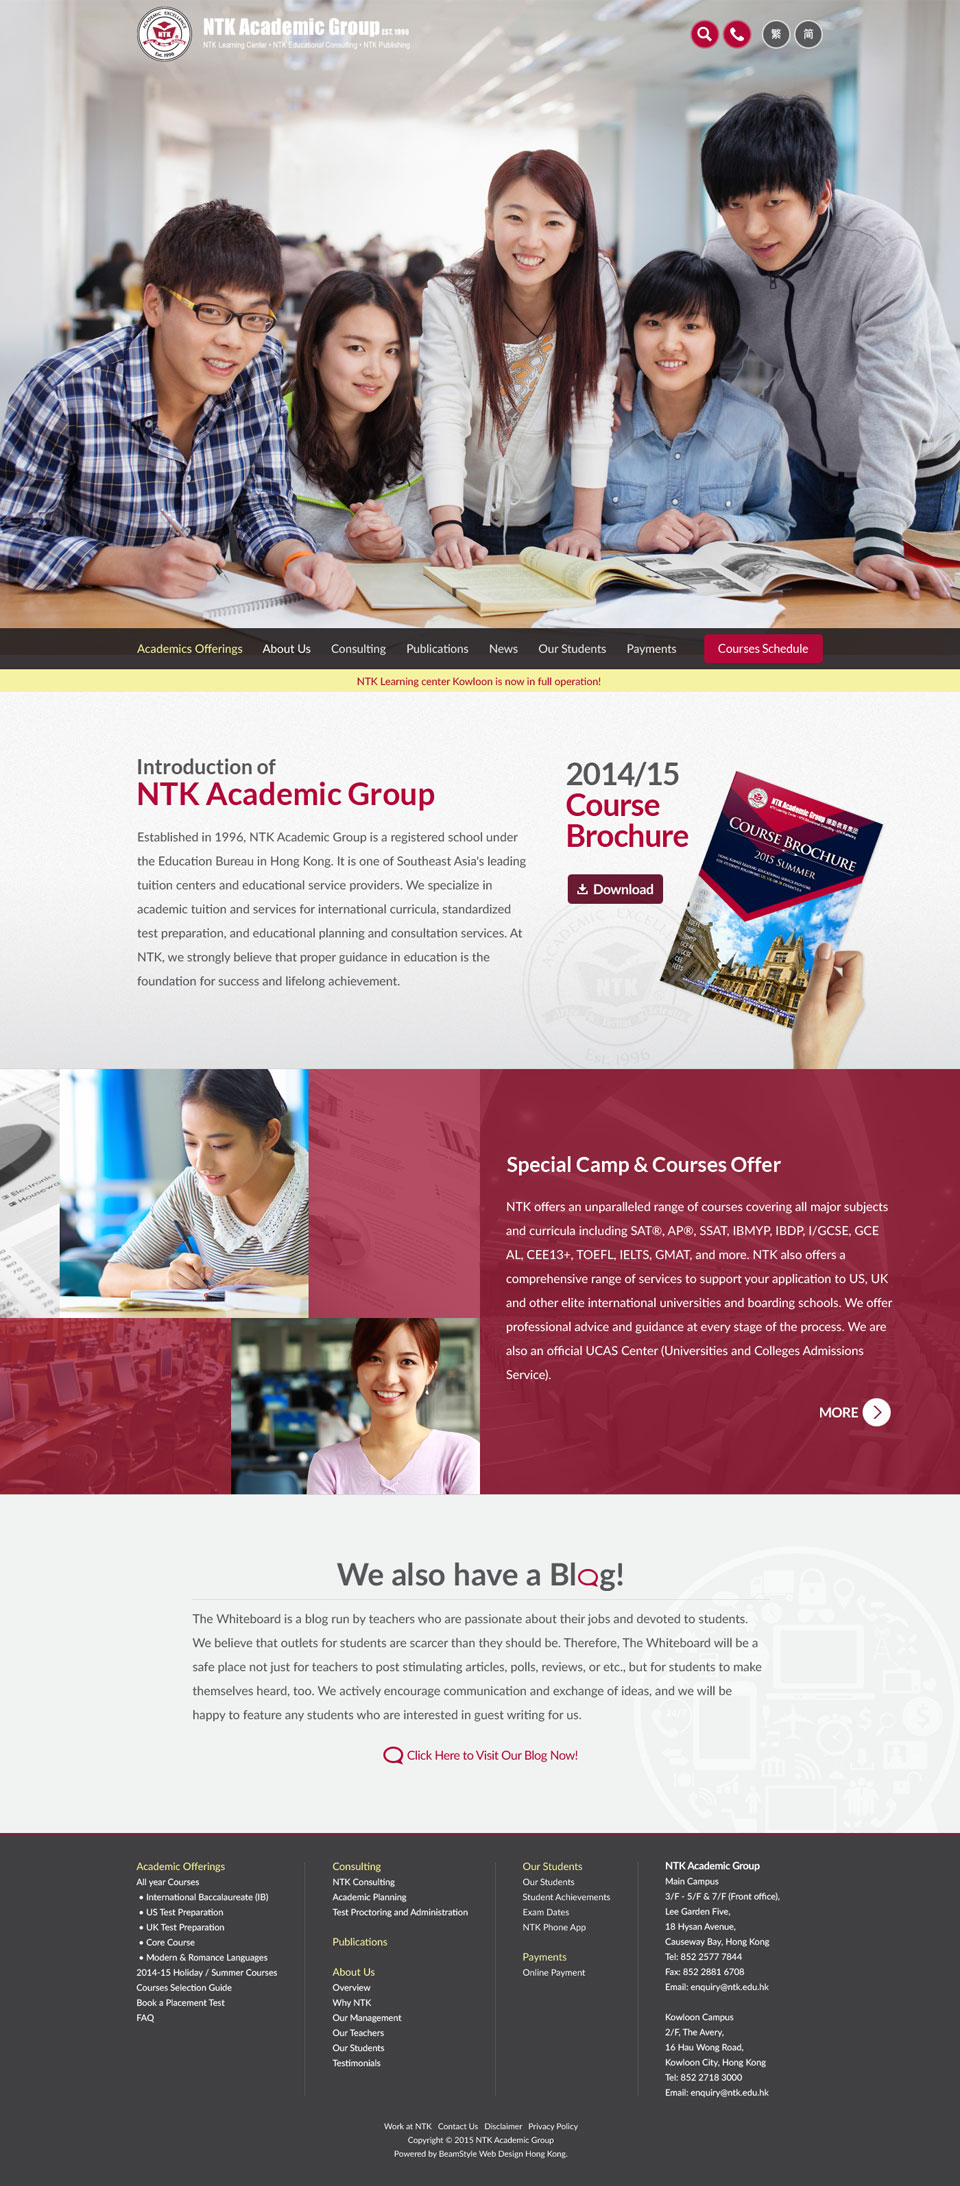 NTK Academic Group